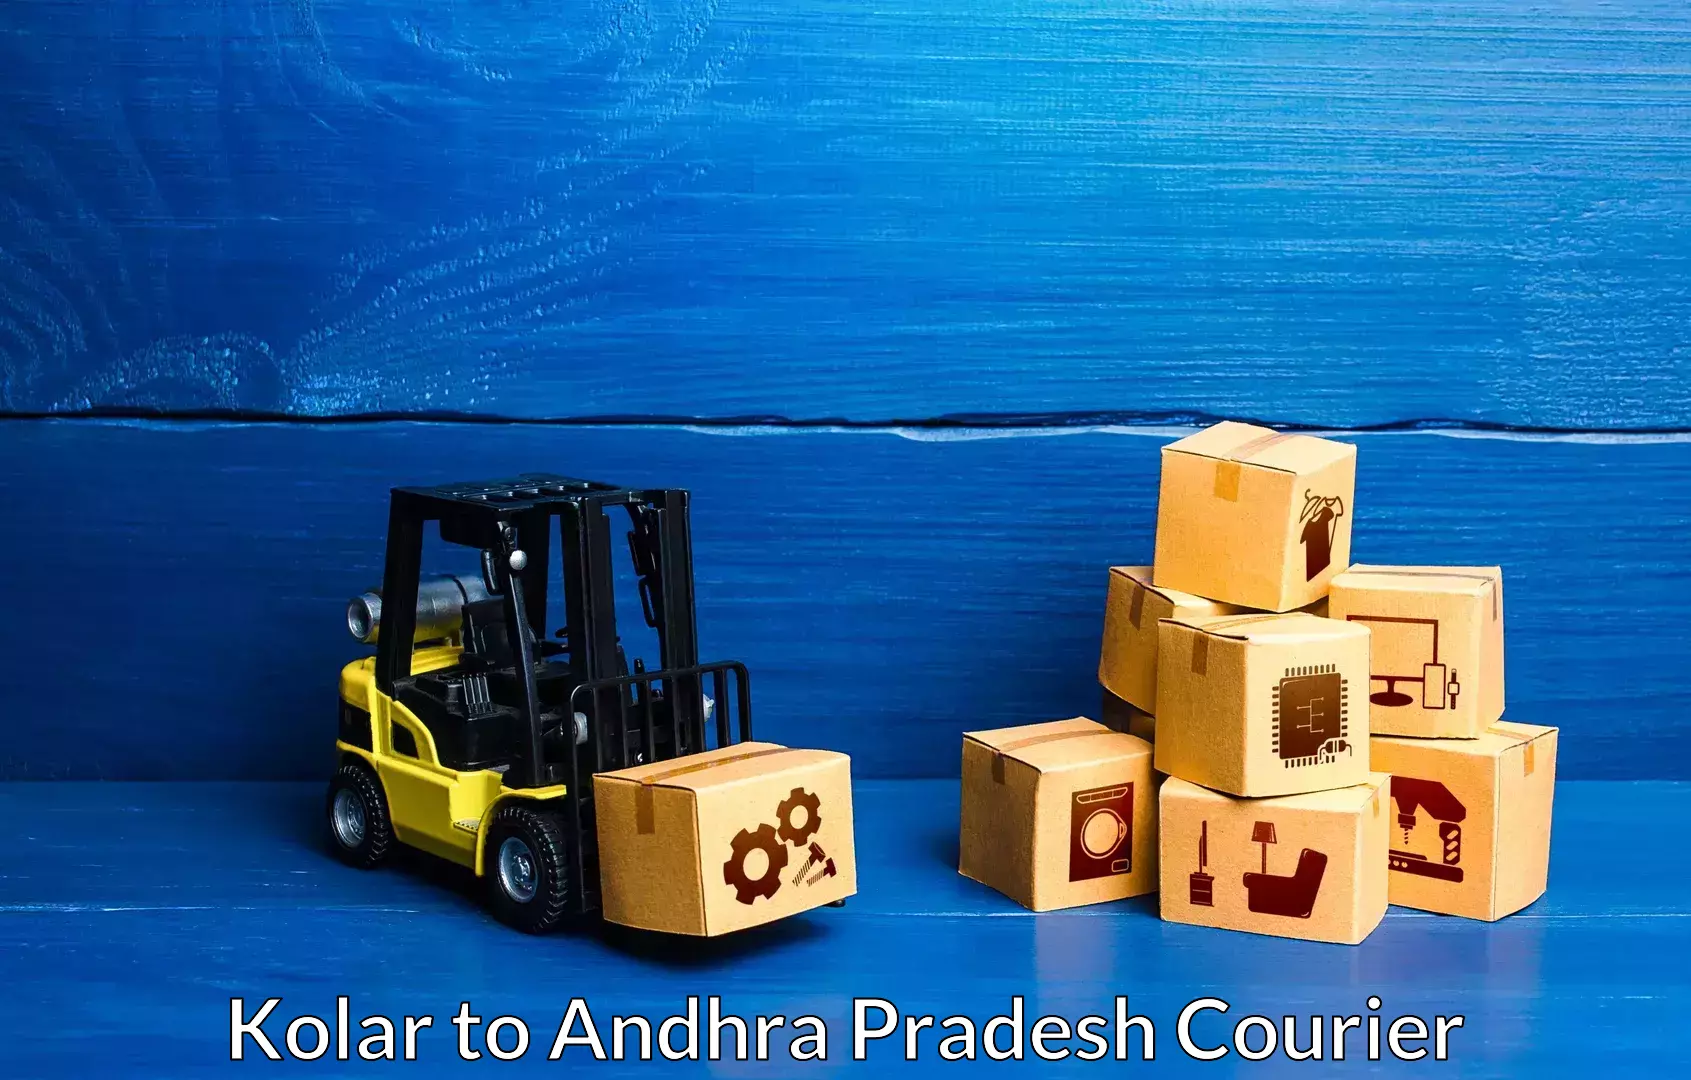 Furniture moving experts Kolar to Andhra Pradesh